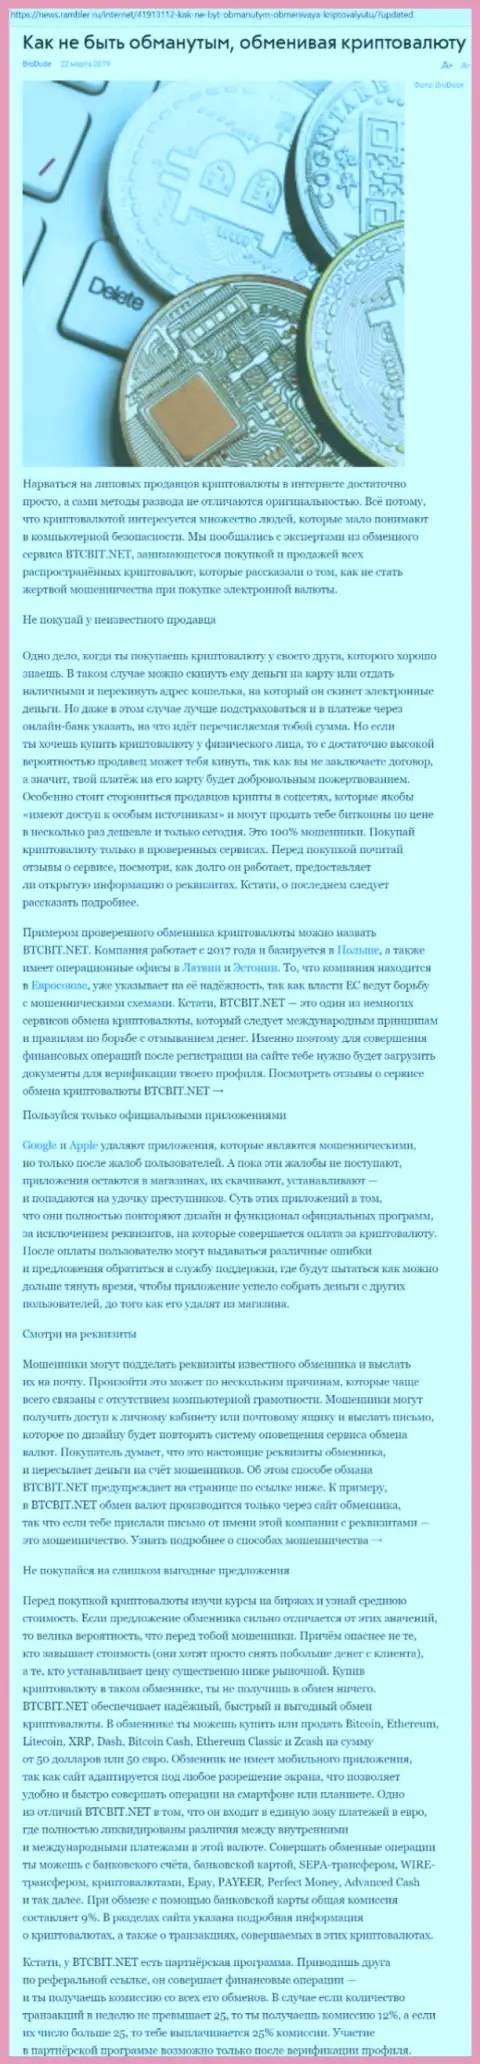 Статья об онлайн обменнике BTCBit на news rambler ru